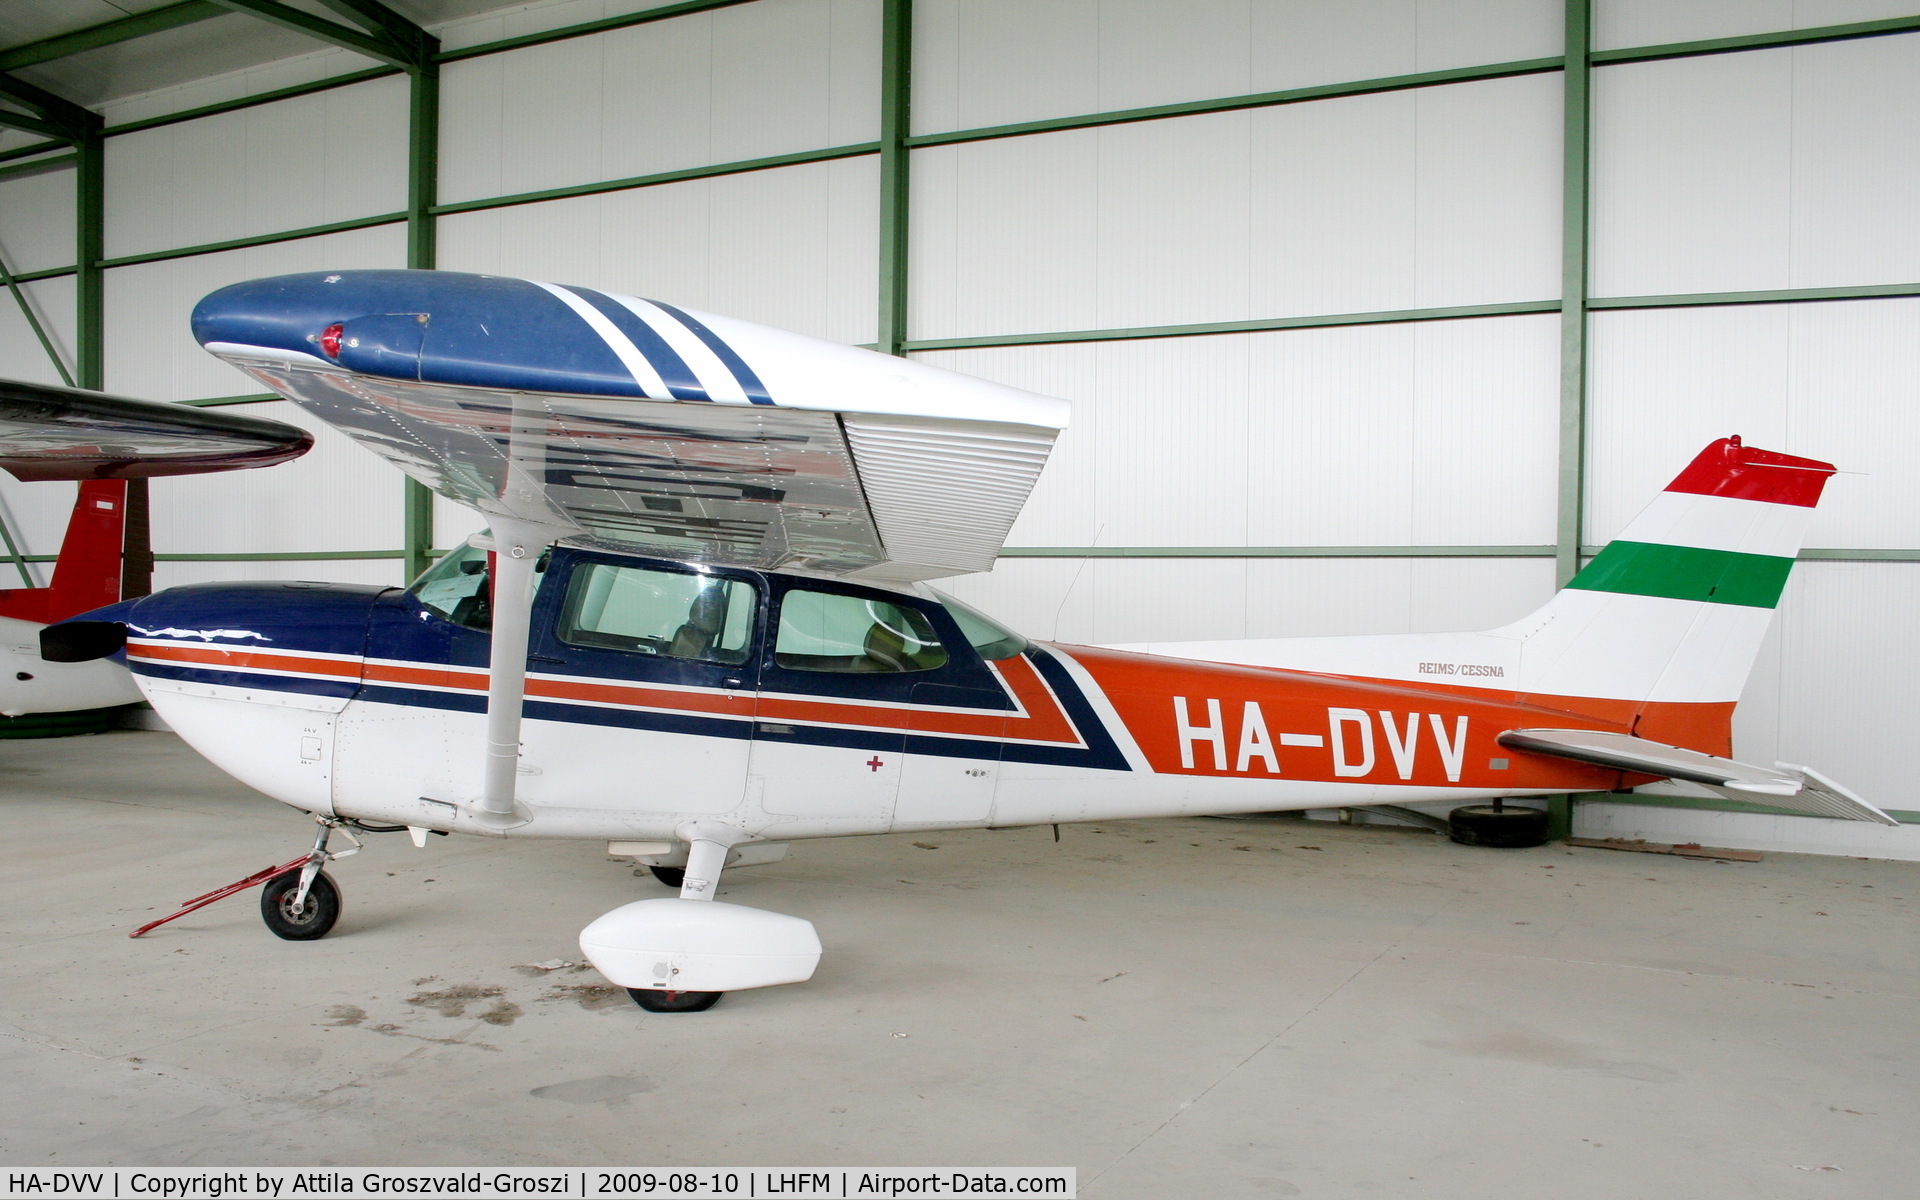 HA-DVV, 1980 Reims FR172K Hawk XP C/N 0670, Fertöszentmiklos - Meidl Airport / LHFM - Hungary